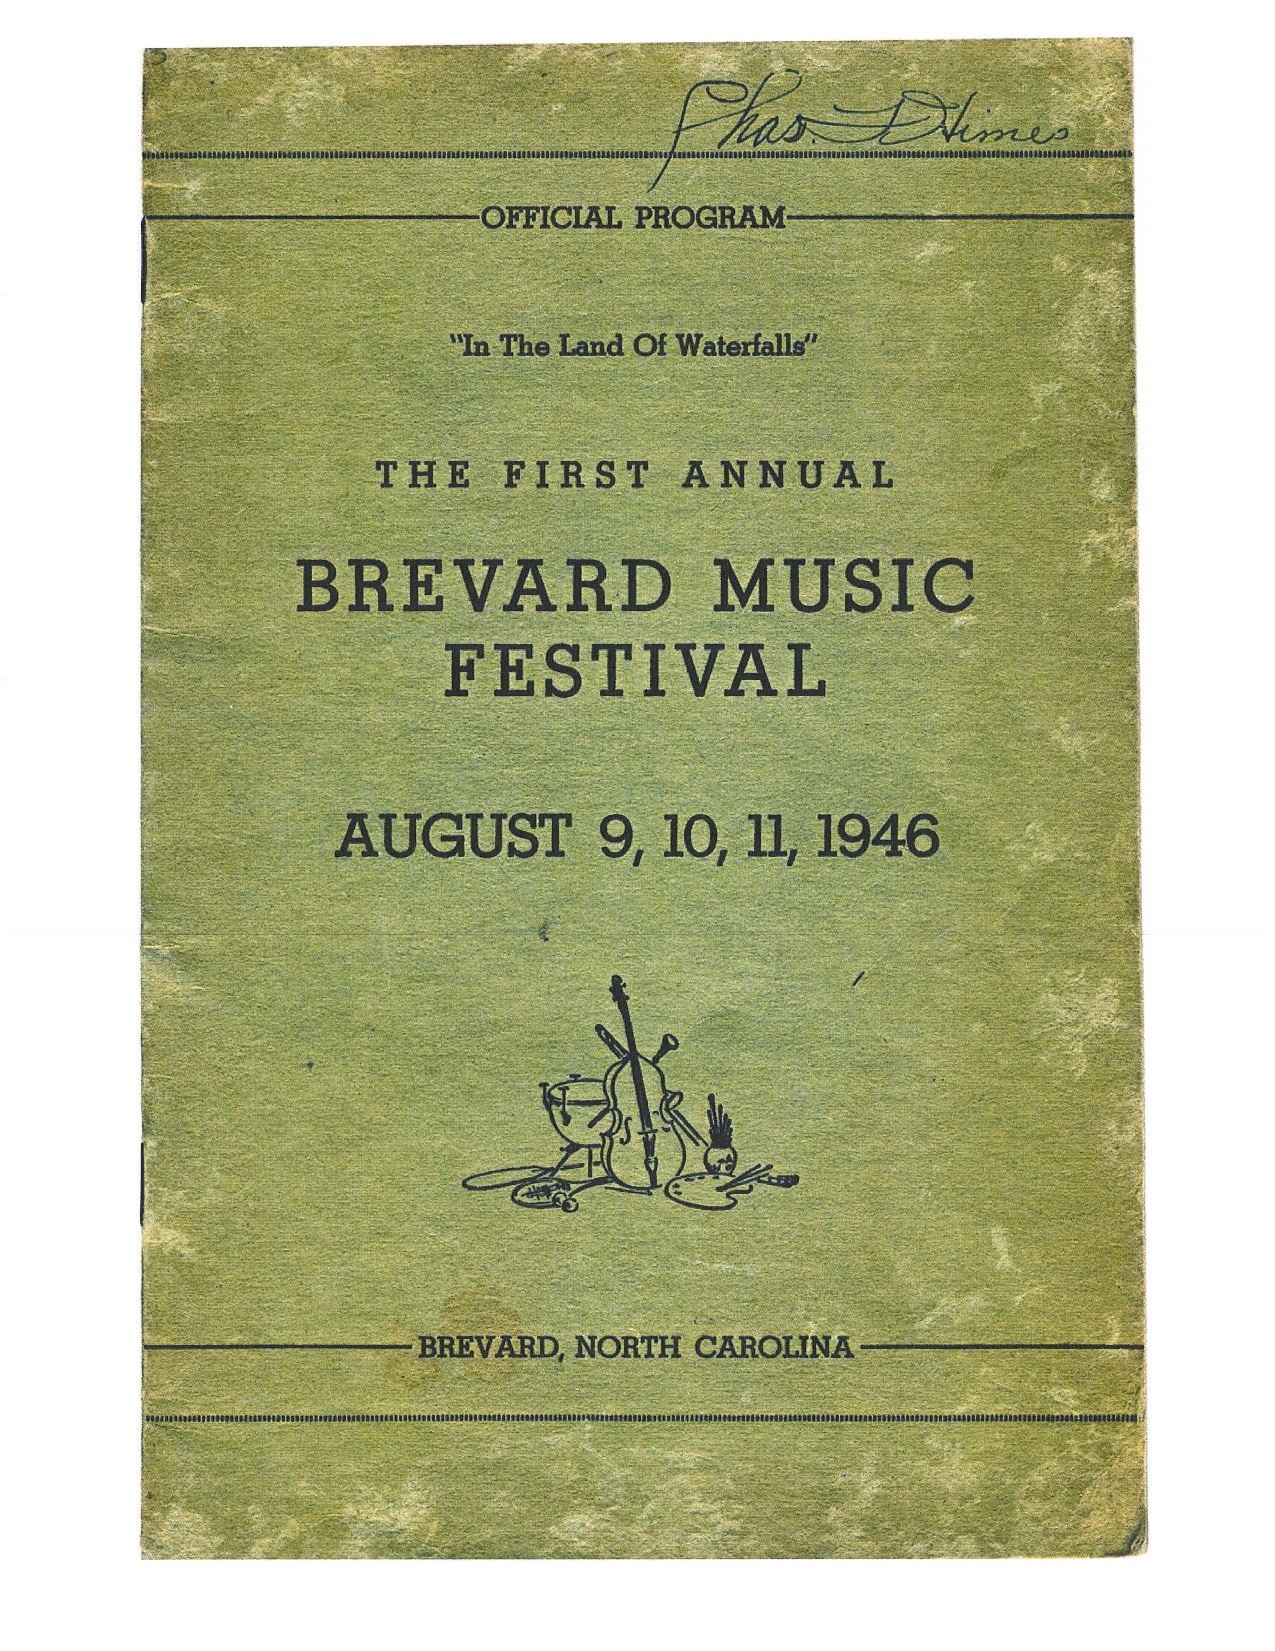 Brevard Music Festival program